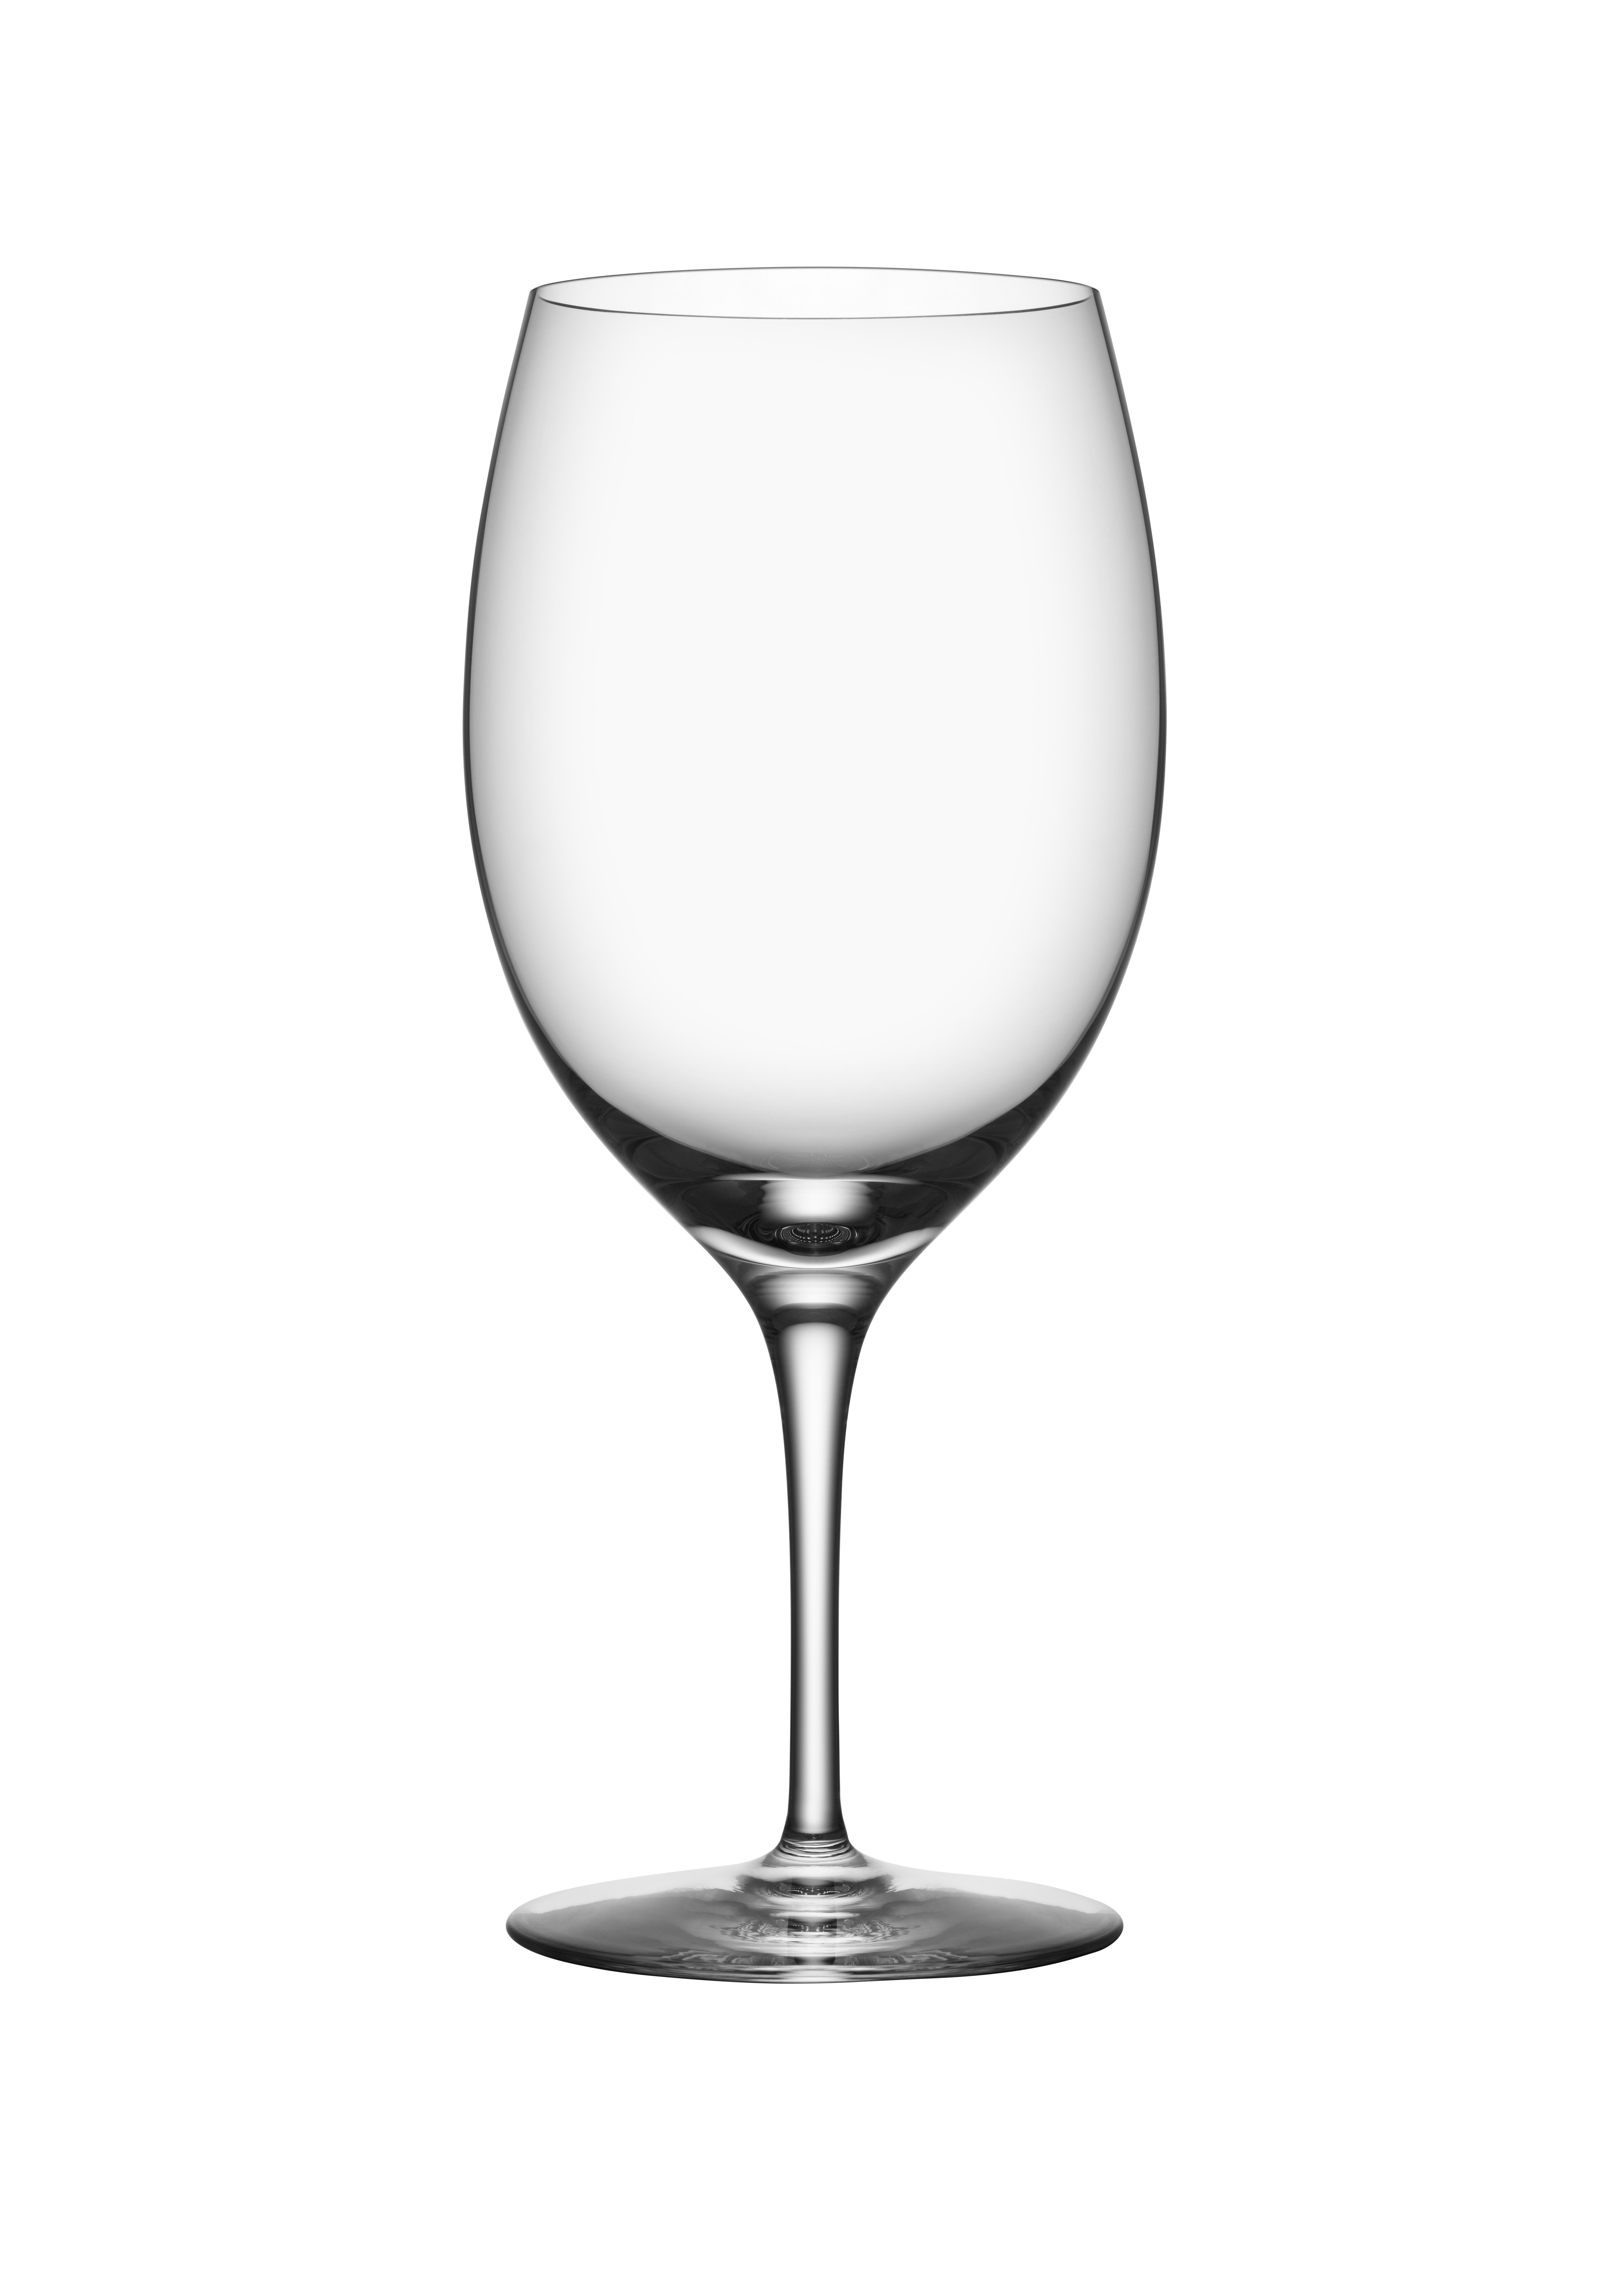 Der Premier Cabernet von Orrefors mit einem Fassungsvermögen von 24 oz ist so konzipiert, dass er den Geschmack und die Aromen von Rebsortenweinen, insbesondere Cabernet Sauvignon, hervorhebt. Das mundgeblasene Weinglas mit handgefertigtem Stiel ist